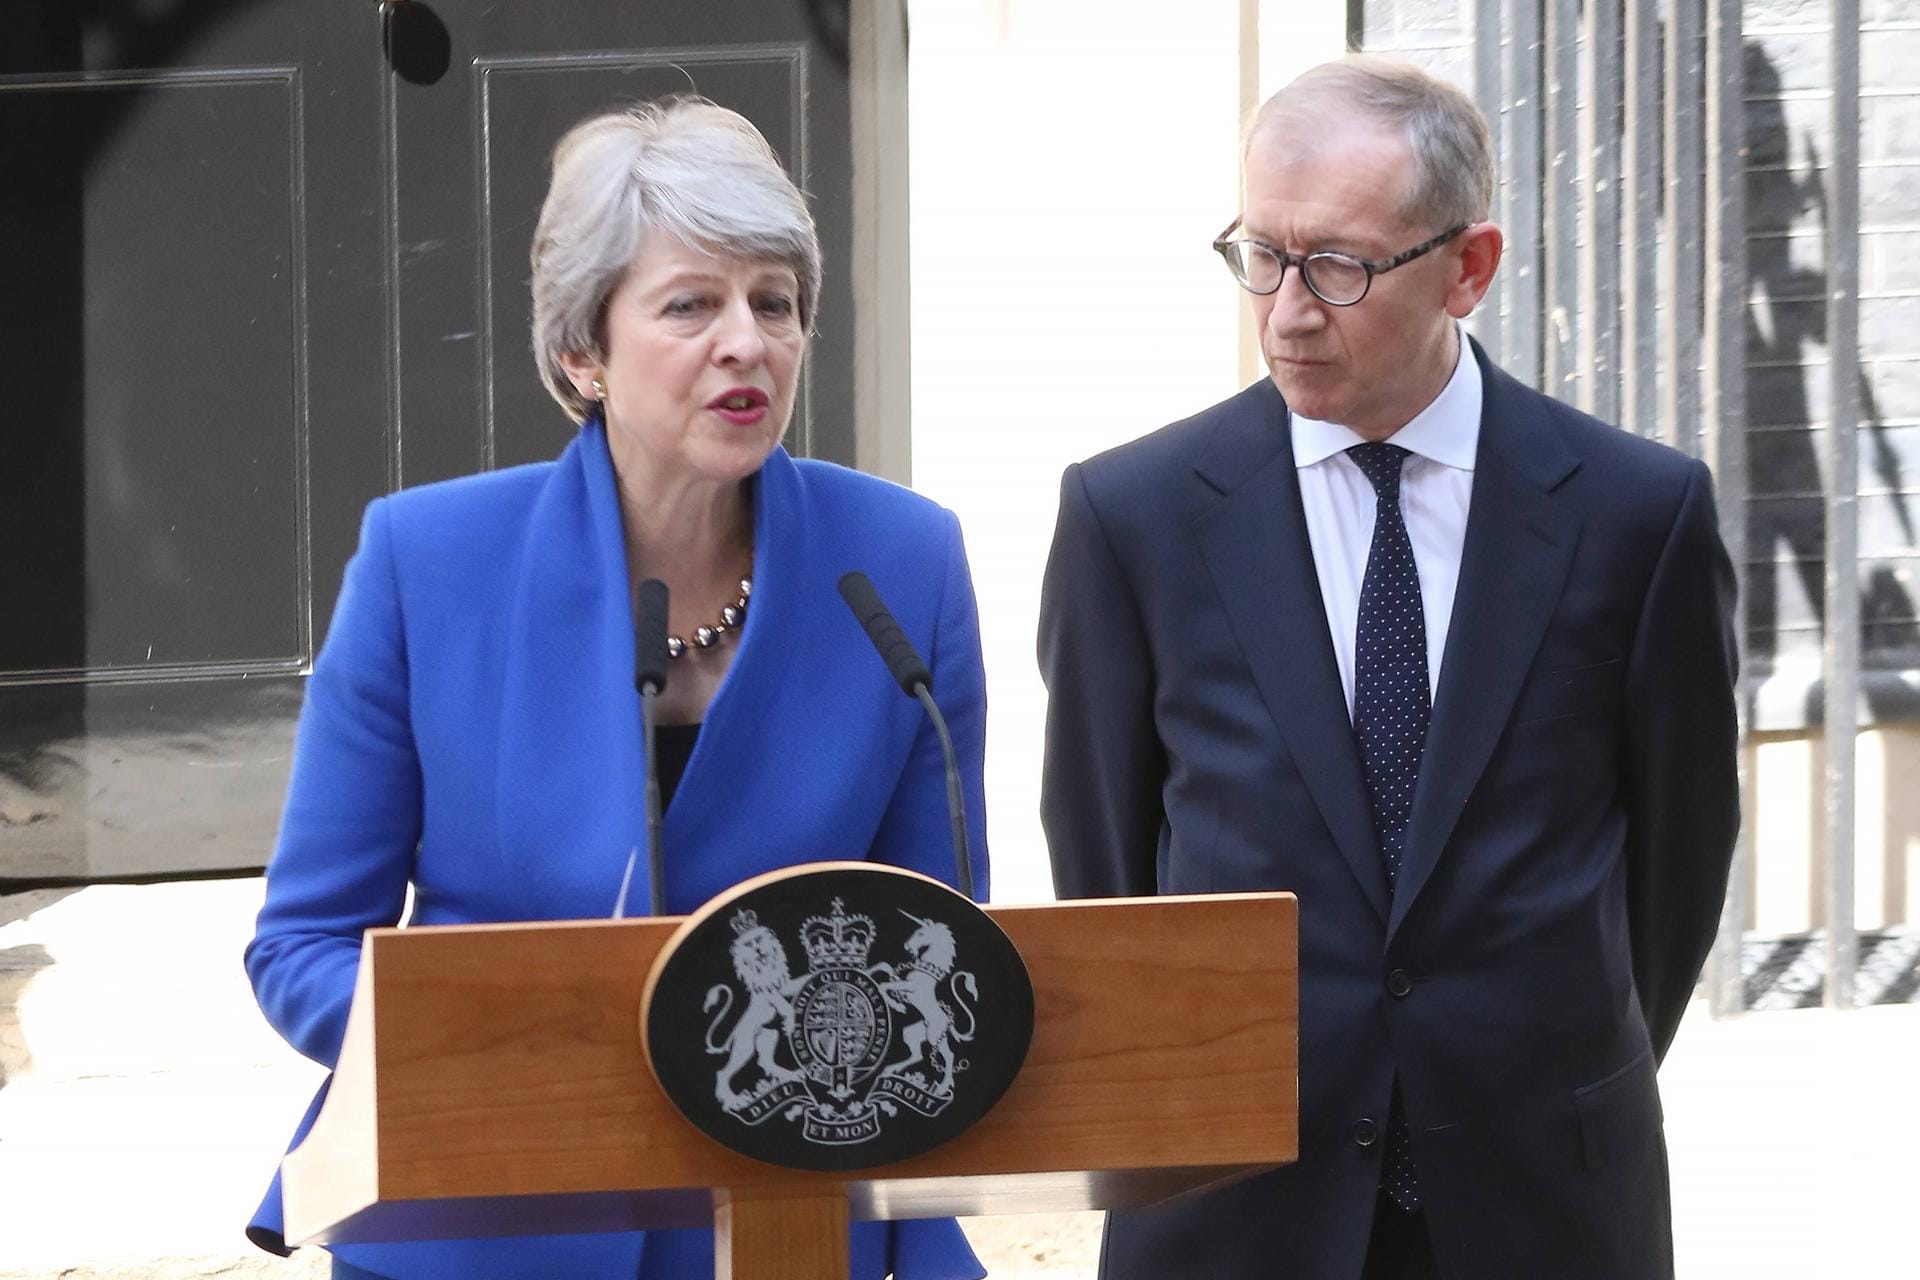 7. Juni 2019: Rücktritt von Theresa May als britische Premierministerin. Sie hatte erfolglos versucht, einen mit der EU ausgehandelten Vertrag über den Brexit durchs britische Unterhaus zu bringen. Jeder ihrer Anläufe wurde von den Abgeordneten abgeschmettert. Auf die glücklose Premierministerin folgte ausgerechnet der Polterer und May-Widersacher Boris Johnson, der regelmäßig drohte, das Vereinigte Königreich notfalls auch ohne Abkommen aus der EU zu führen.